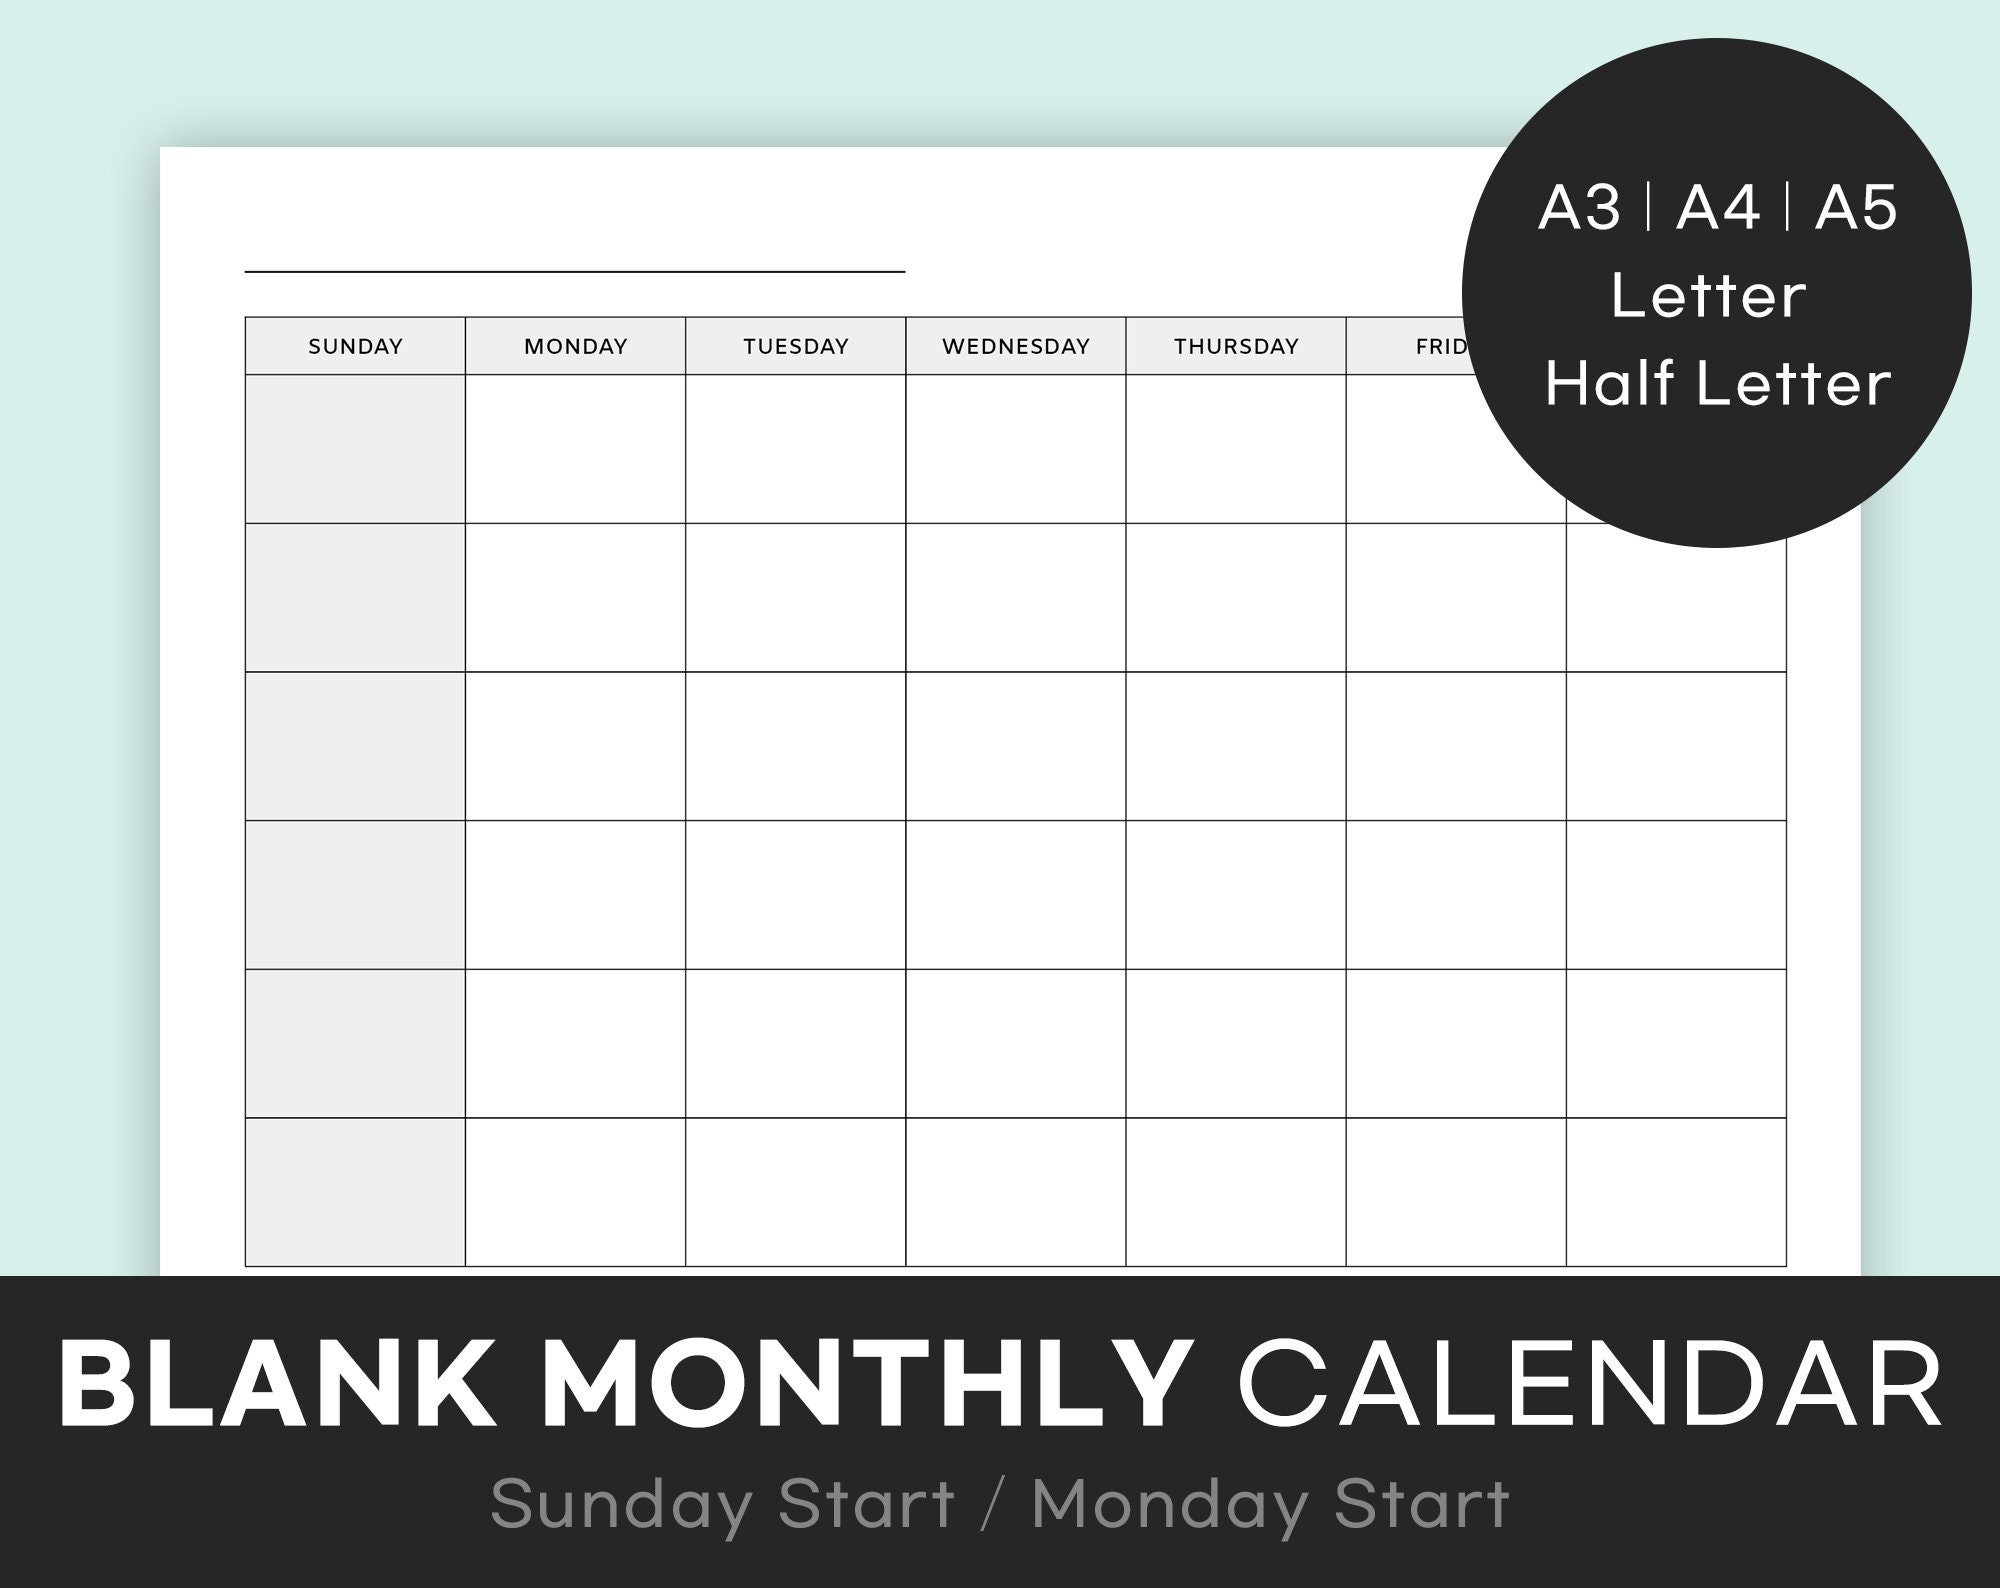 Calendario Mensual En Blanco Imprimible Calendario Etsy